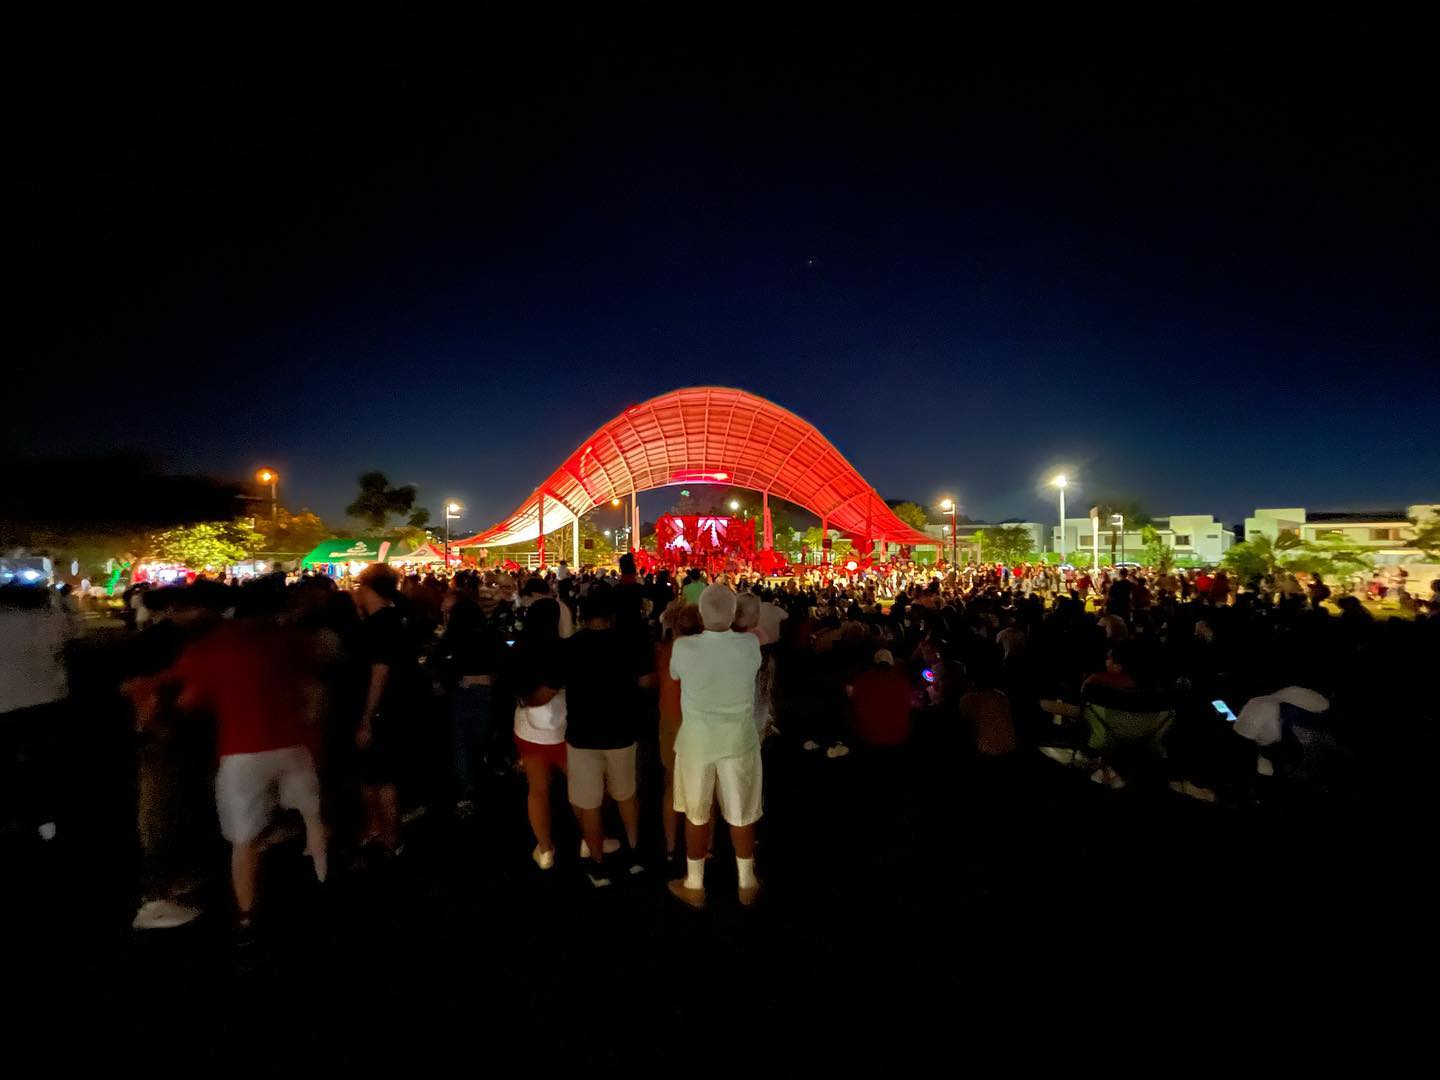 Personas observando un evento musical nocturno en la tarima techada del Parque RACH en Paseo del Norte.